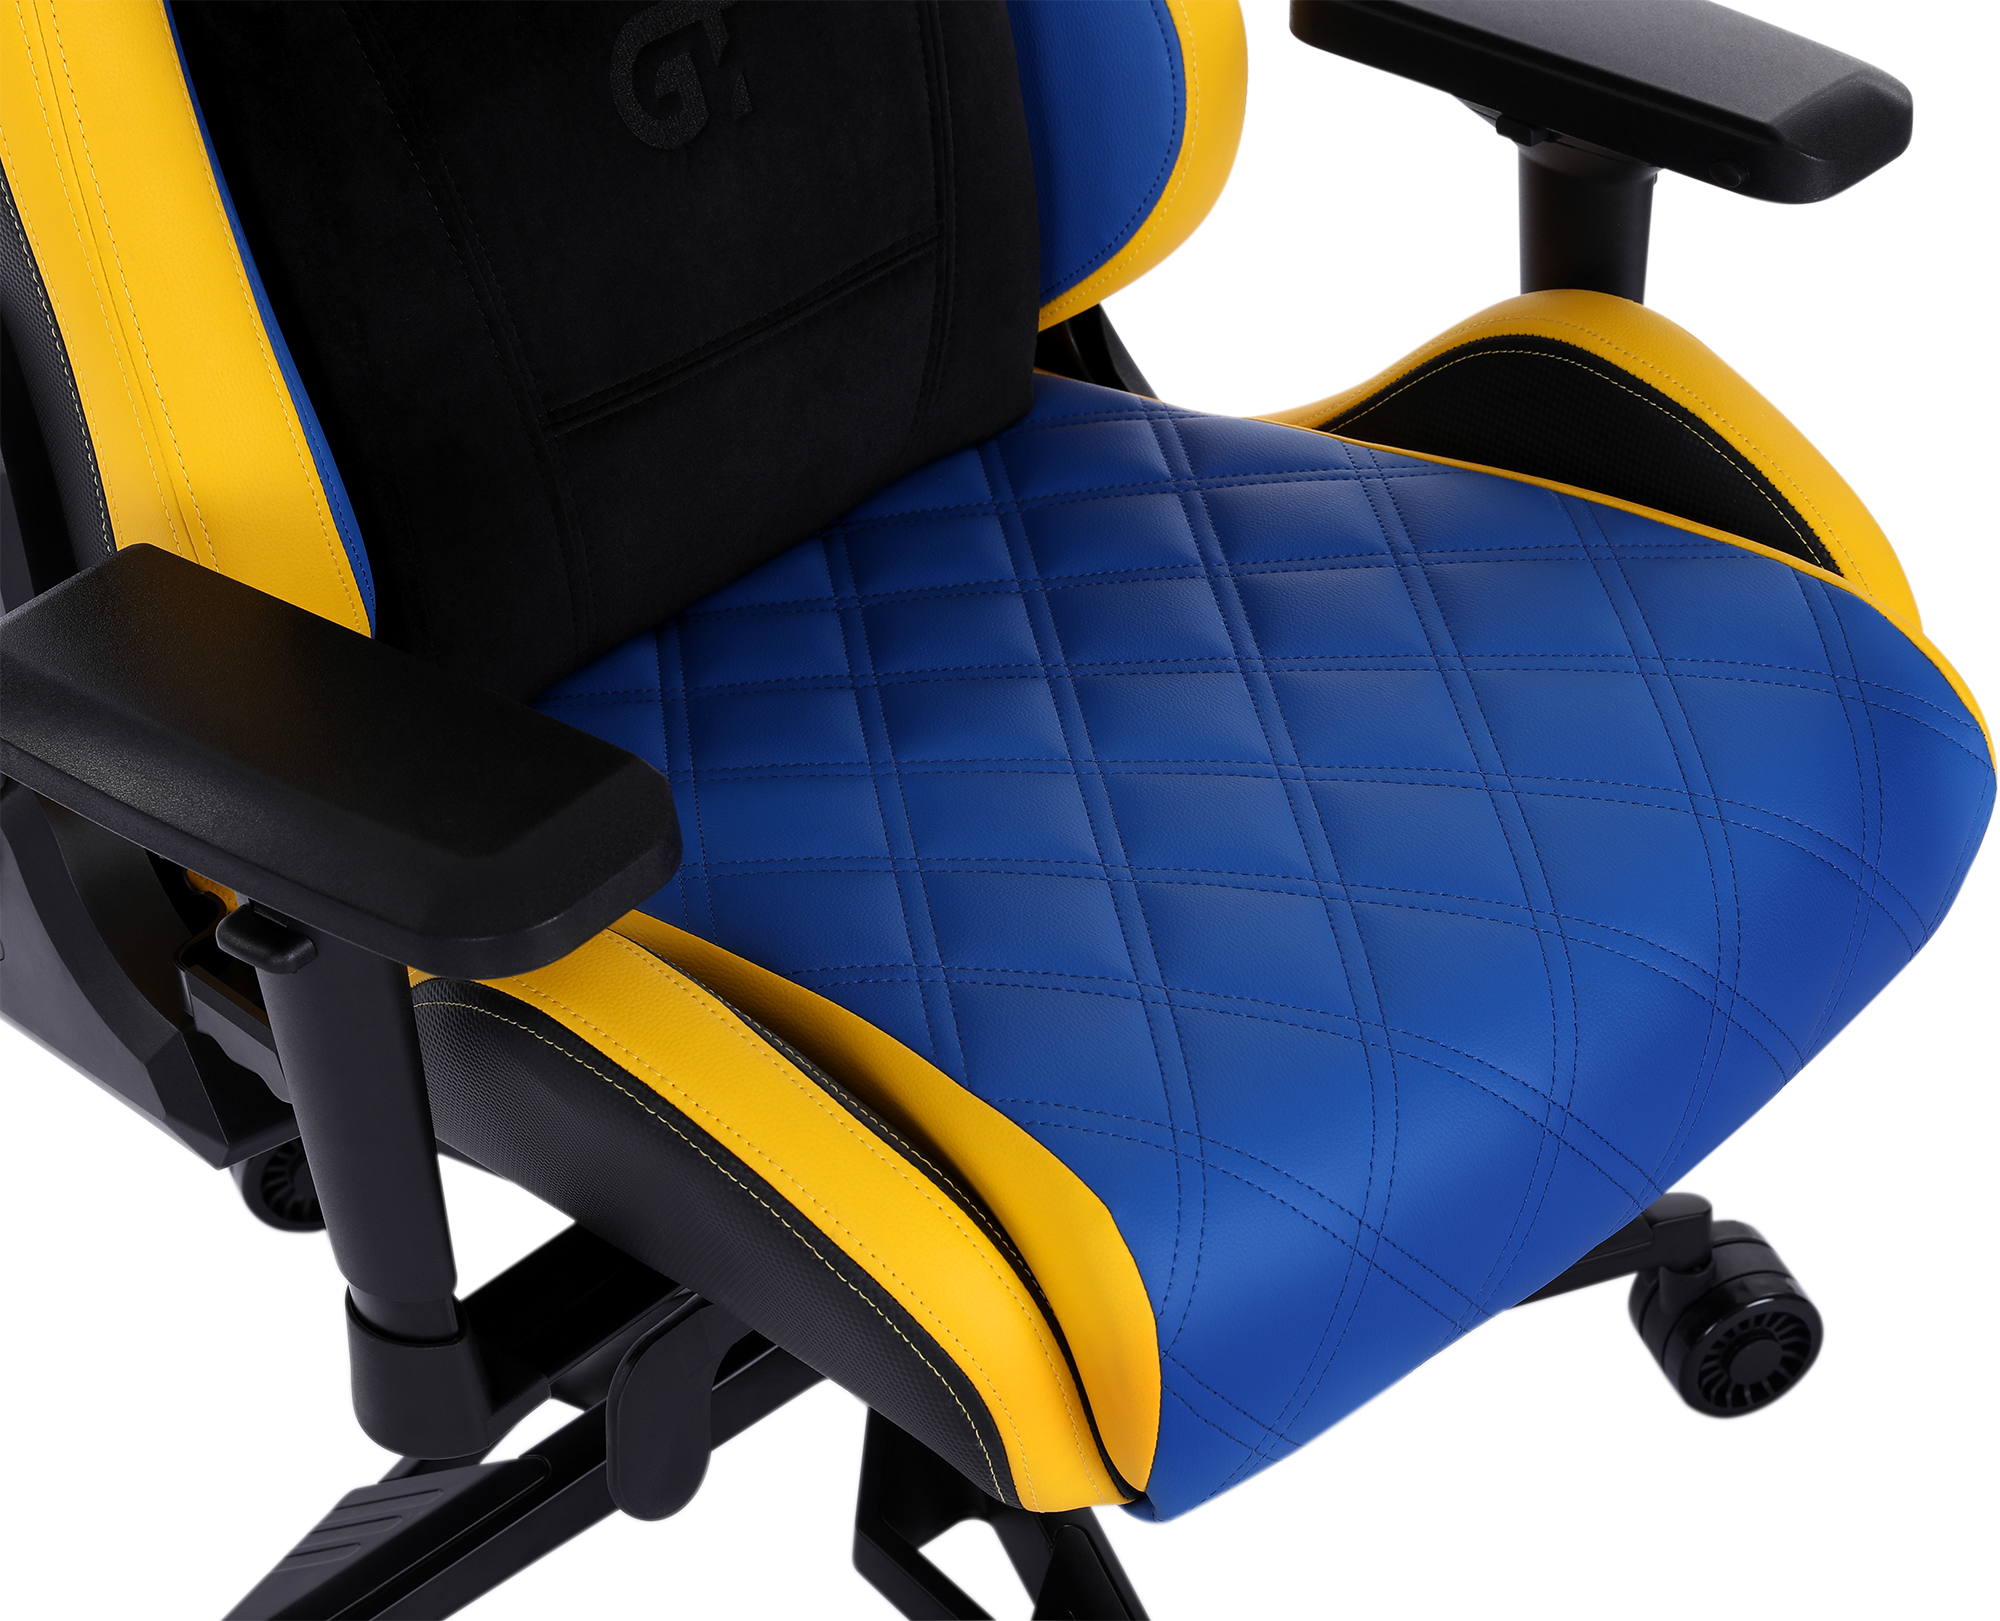 Геймерское кресло GT Racer синее с желтым (X-0724 Blue/Yellow) - фото 8